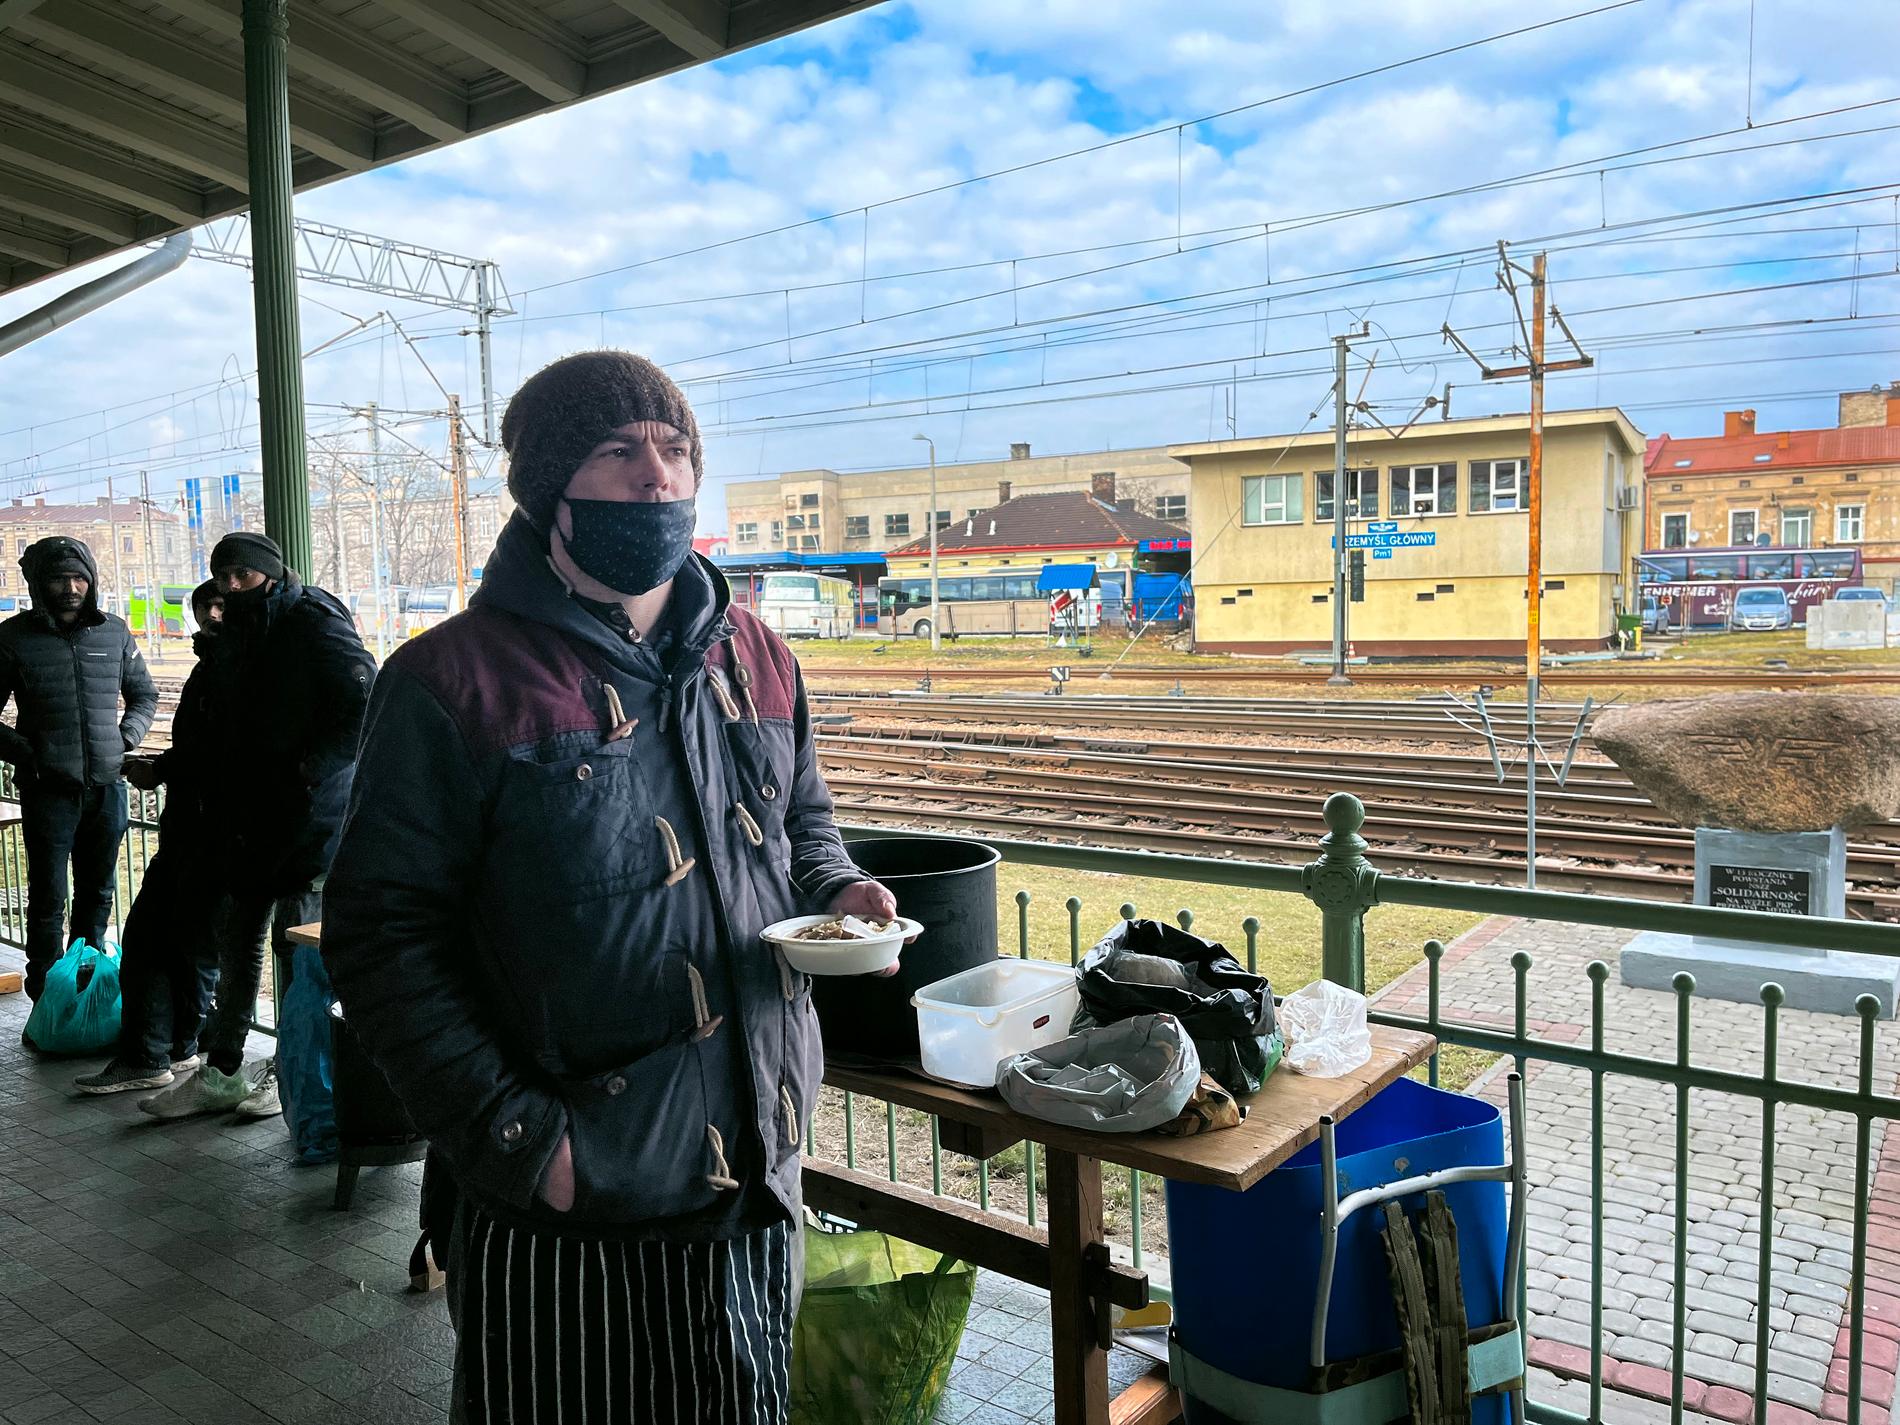 Många volontärer hjälper flyktingarna vid stationen. Maciek har lagat kål- och köttsoppa, en traditionell polsk rätt som han delar ut.